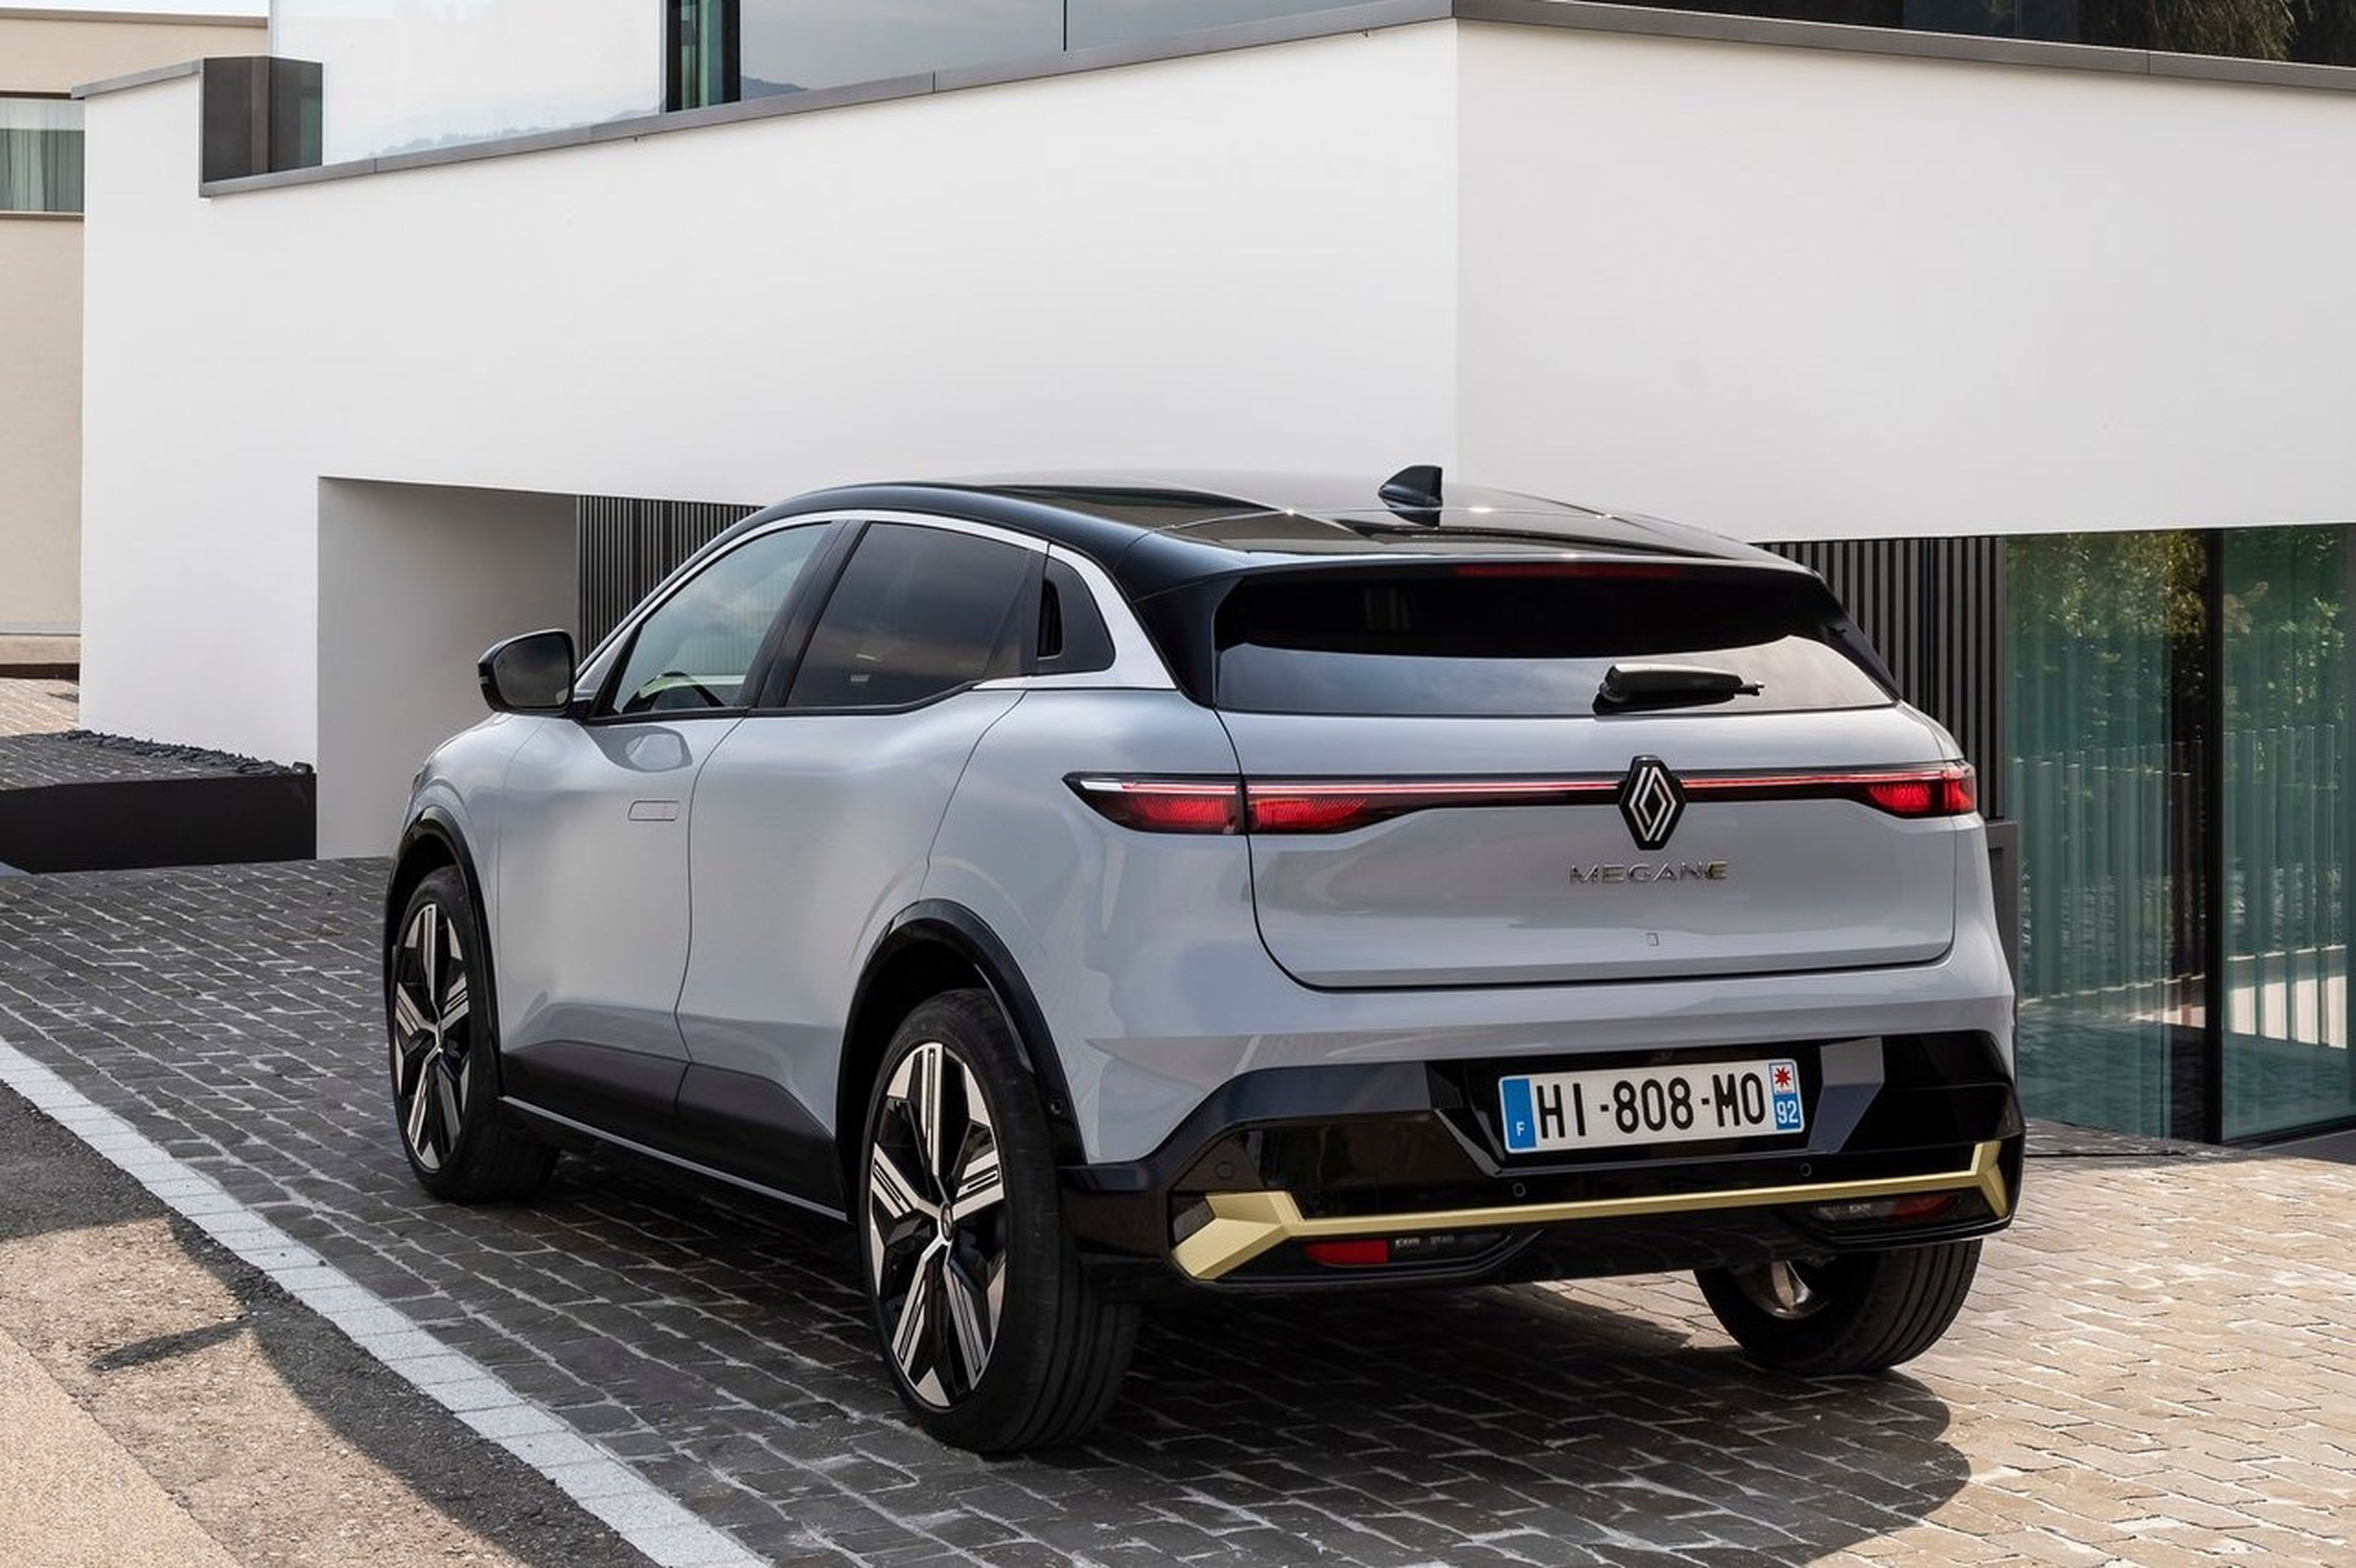 Renault Megane E-Tech eléctrico, el SUV con hasta 470 kilómetros de autonomía, desembarca en España